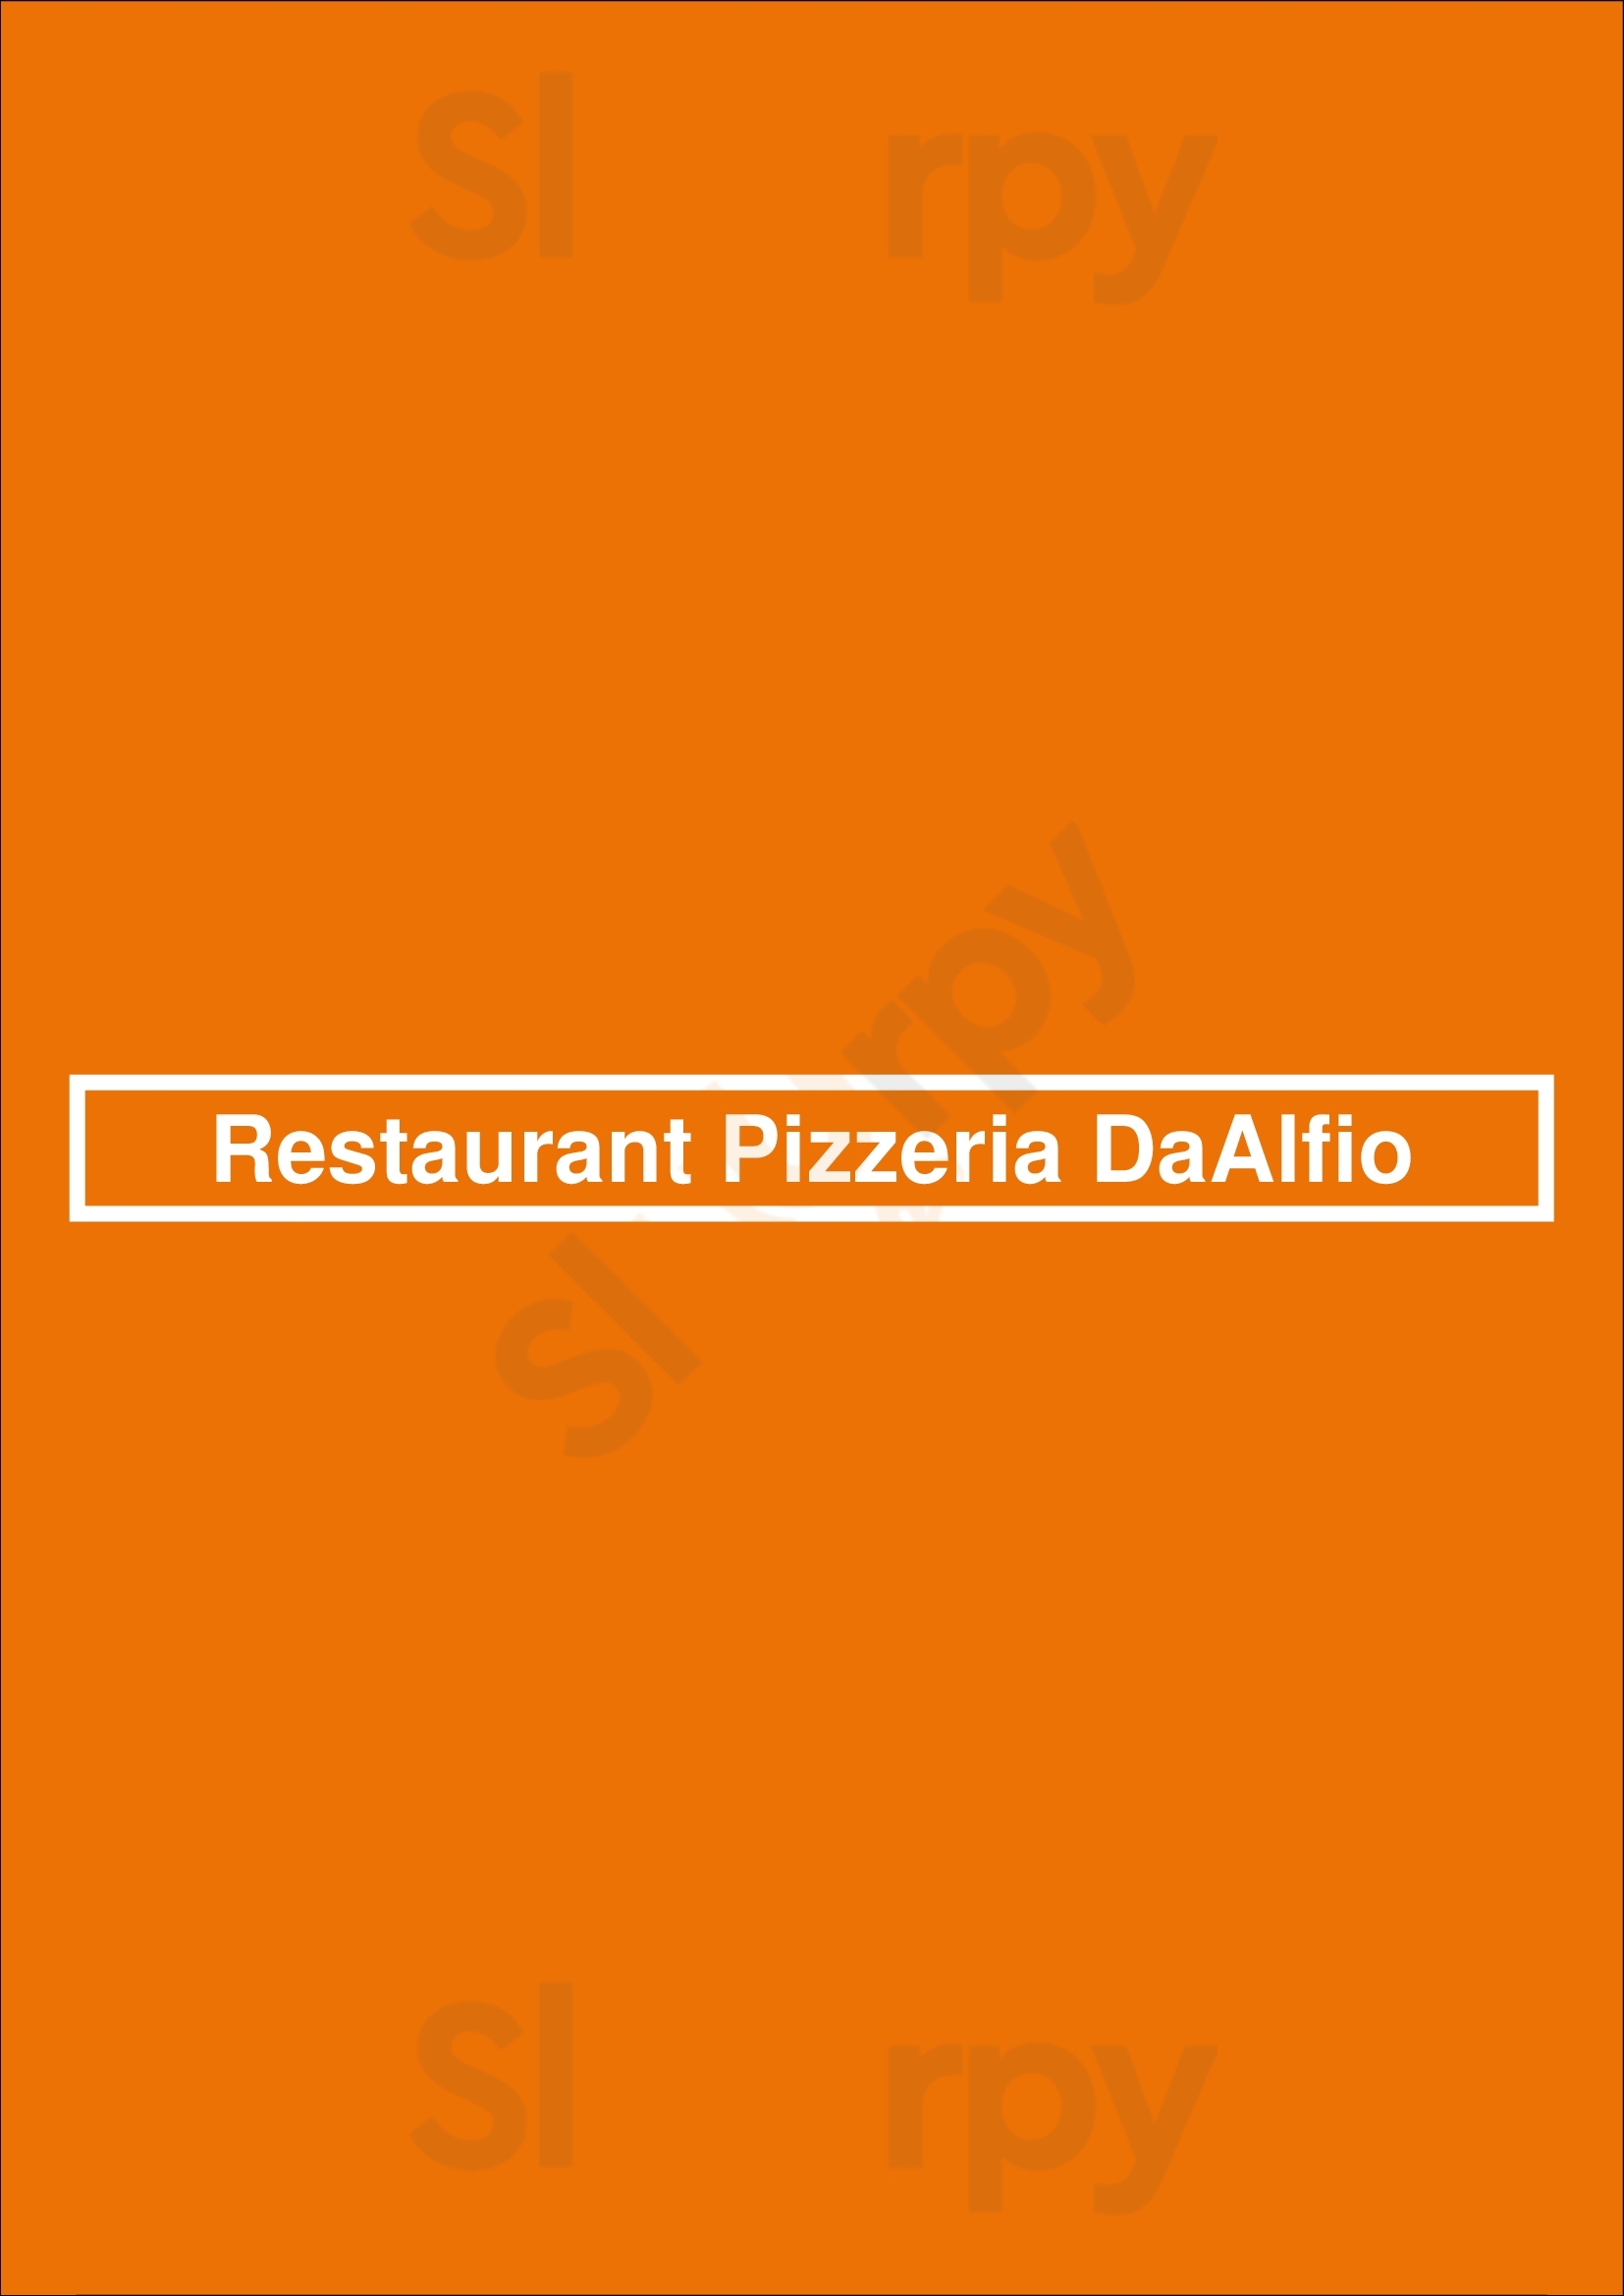 Restaurant Pizzeria Daalfio Wassenaar Menu - 1